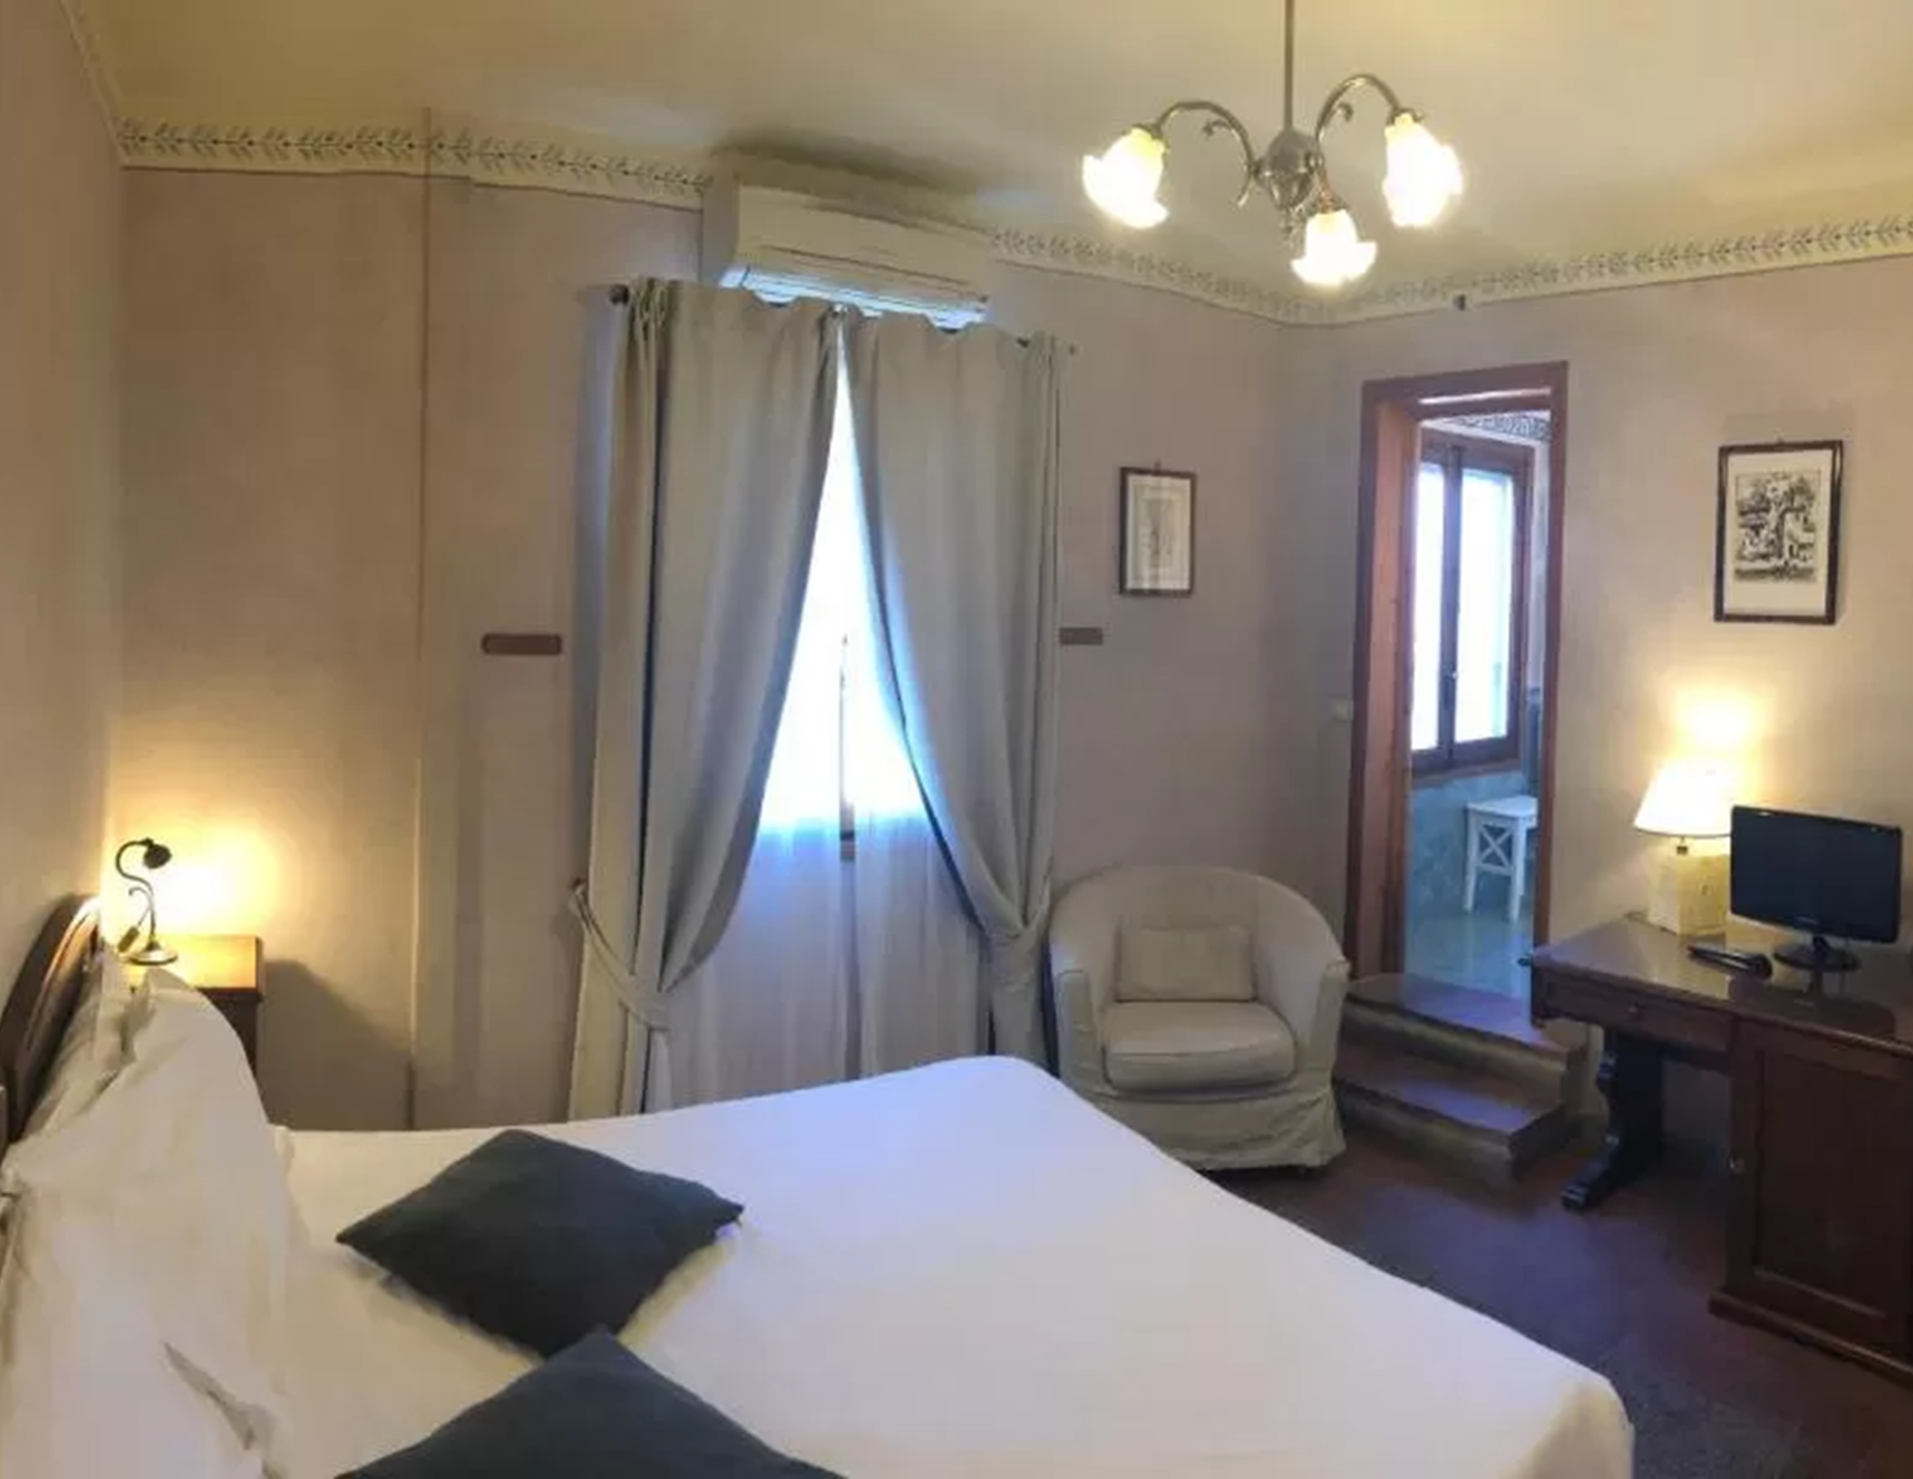 Hotel Bellavista - Room 6